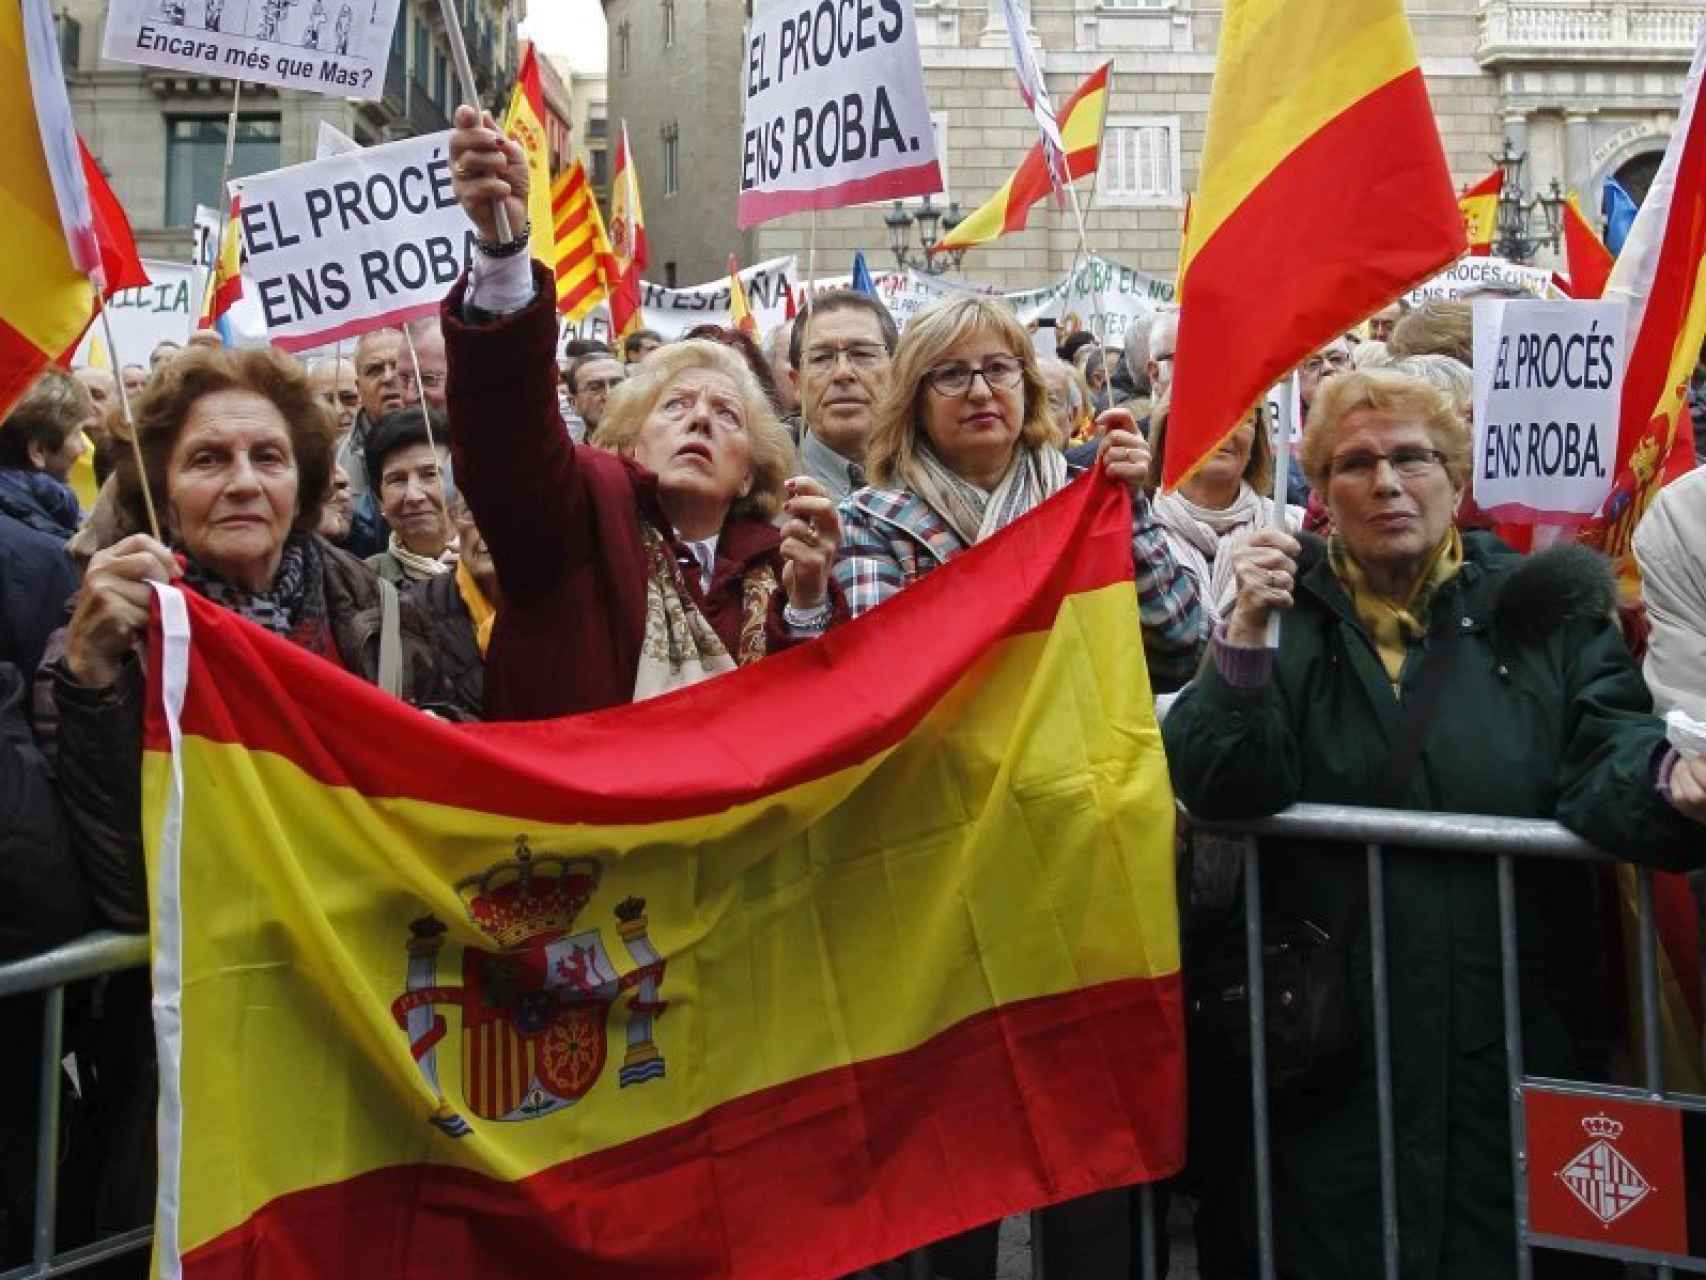 Los manifestantes, disconformes con el programa independentista del gobierno catalán.